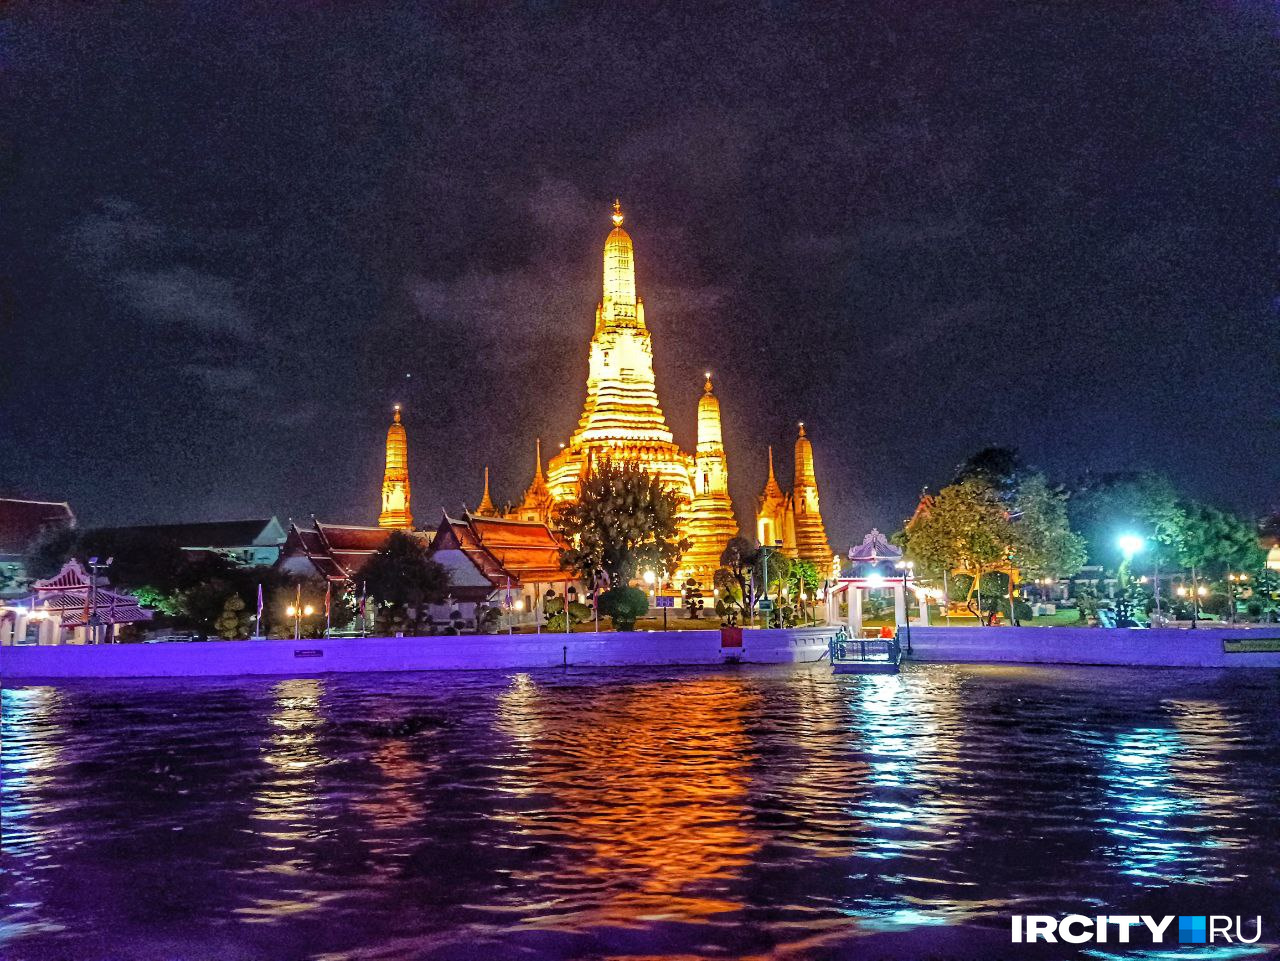 Храм Утренней зари Ват Арун находится недалеко от королевского дворца в Бангкоке